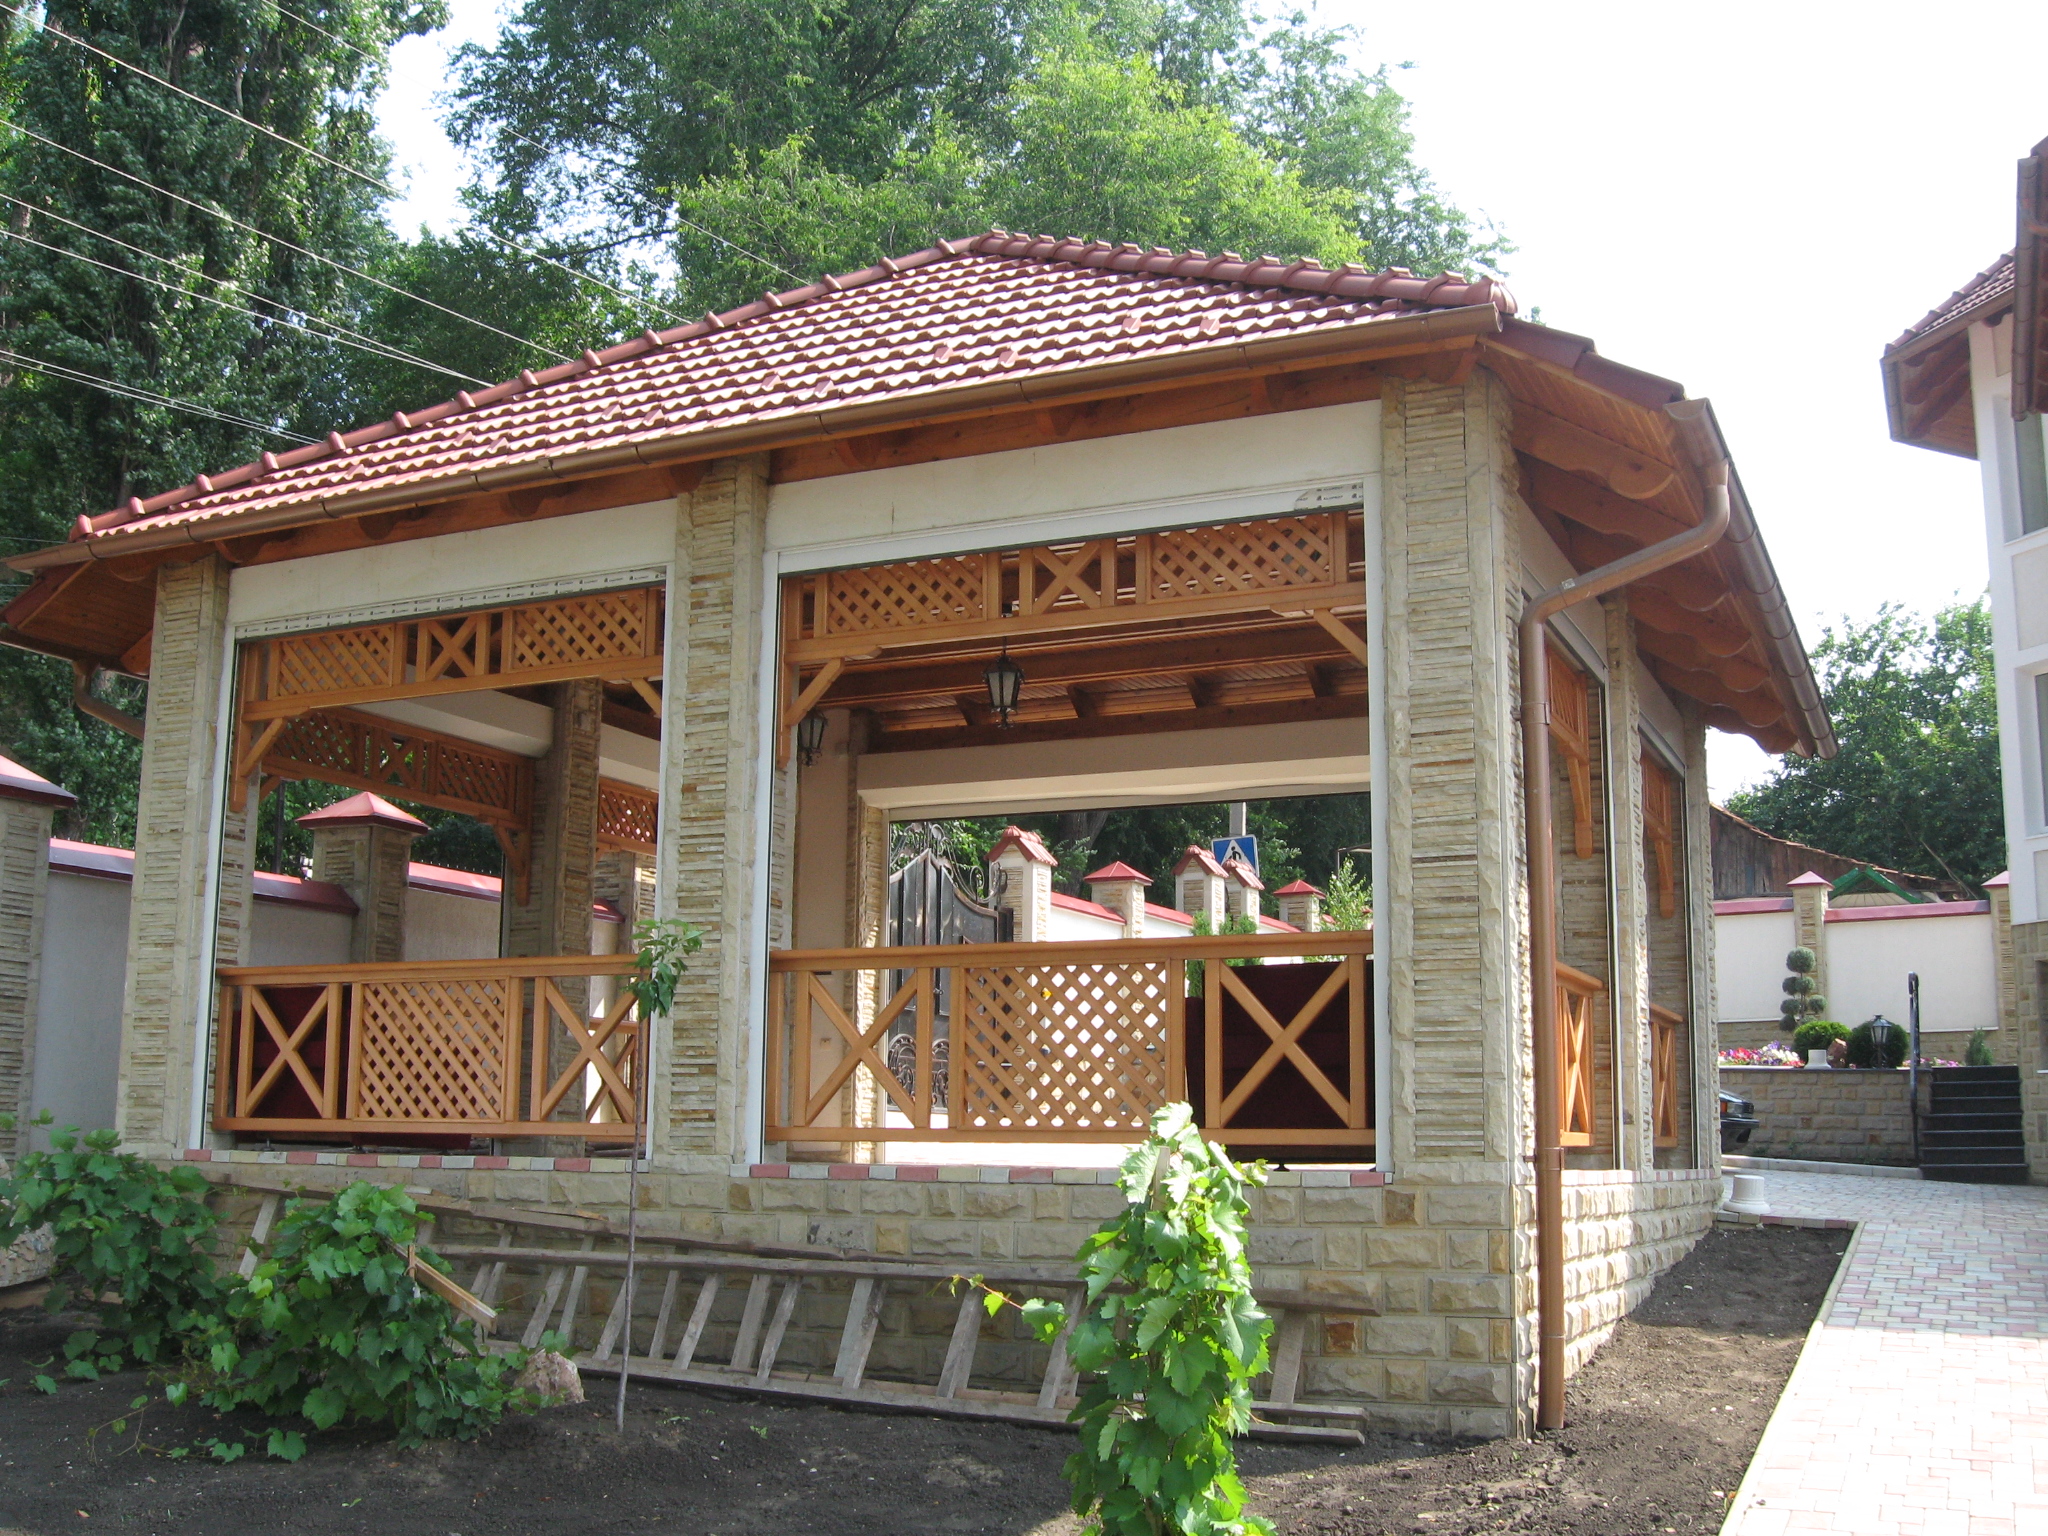 Confectionam foisoare, verande, balustrade, balcoane, casute de vara si alte obiecte din lemn. Pentr...